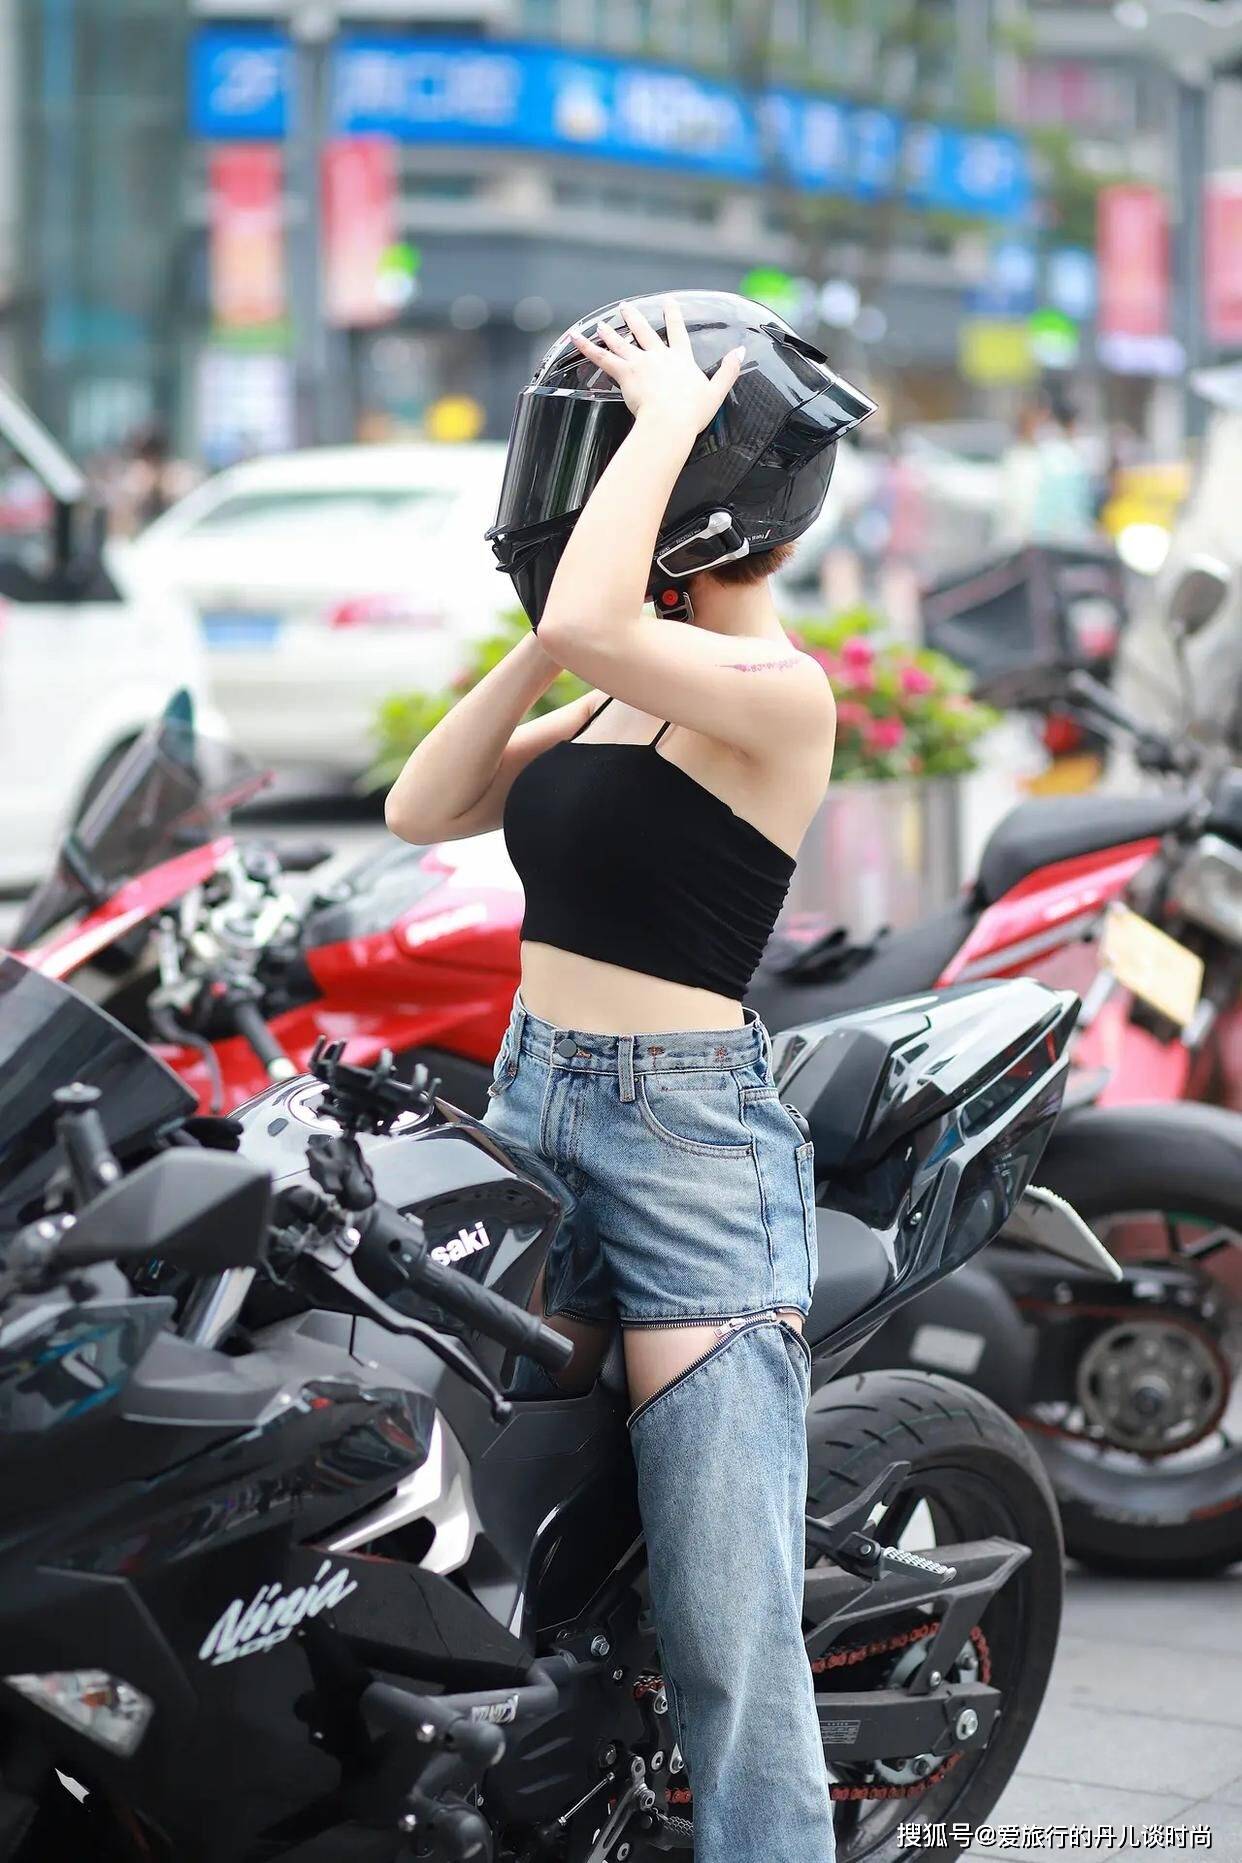 骑摩托车的小姐姐身穿黑色吊带搭配破洞牛仔裤又甜又酷